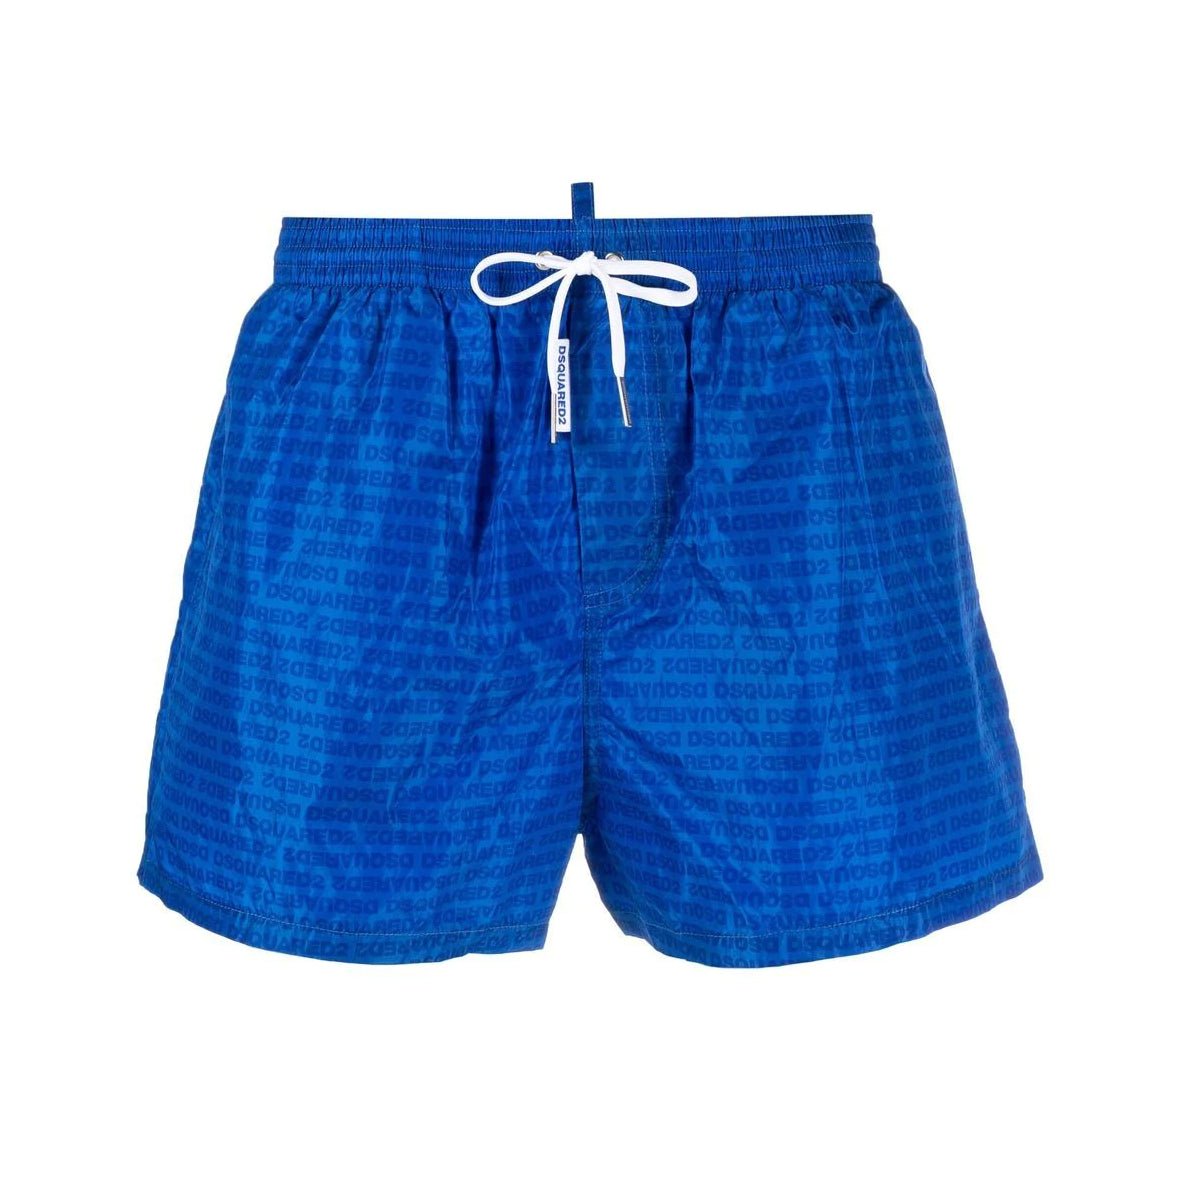 DSquared2 Logo Print Swim Shorts - 430 Blue - Escape Menswear